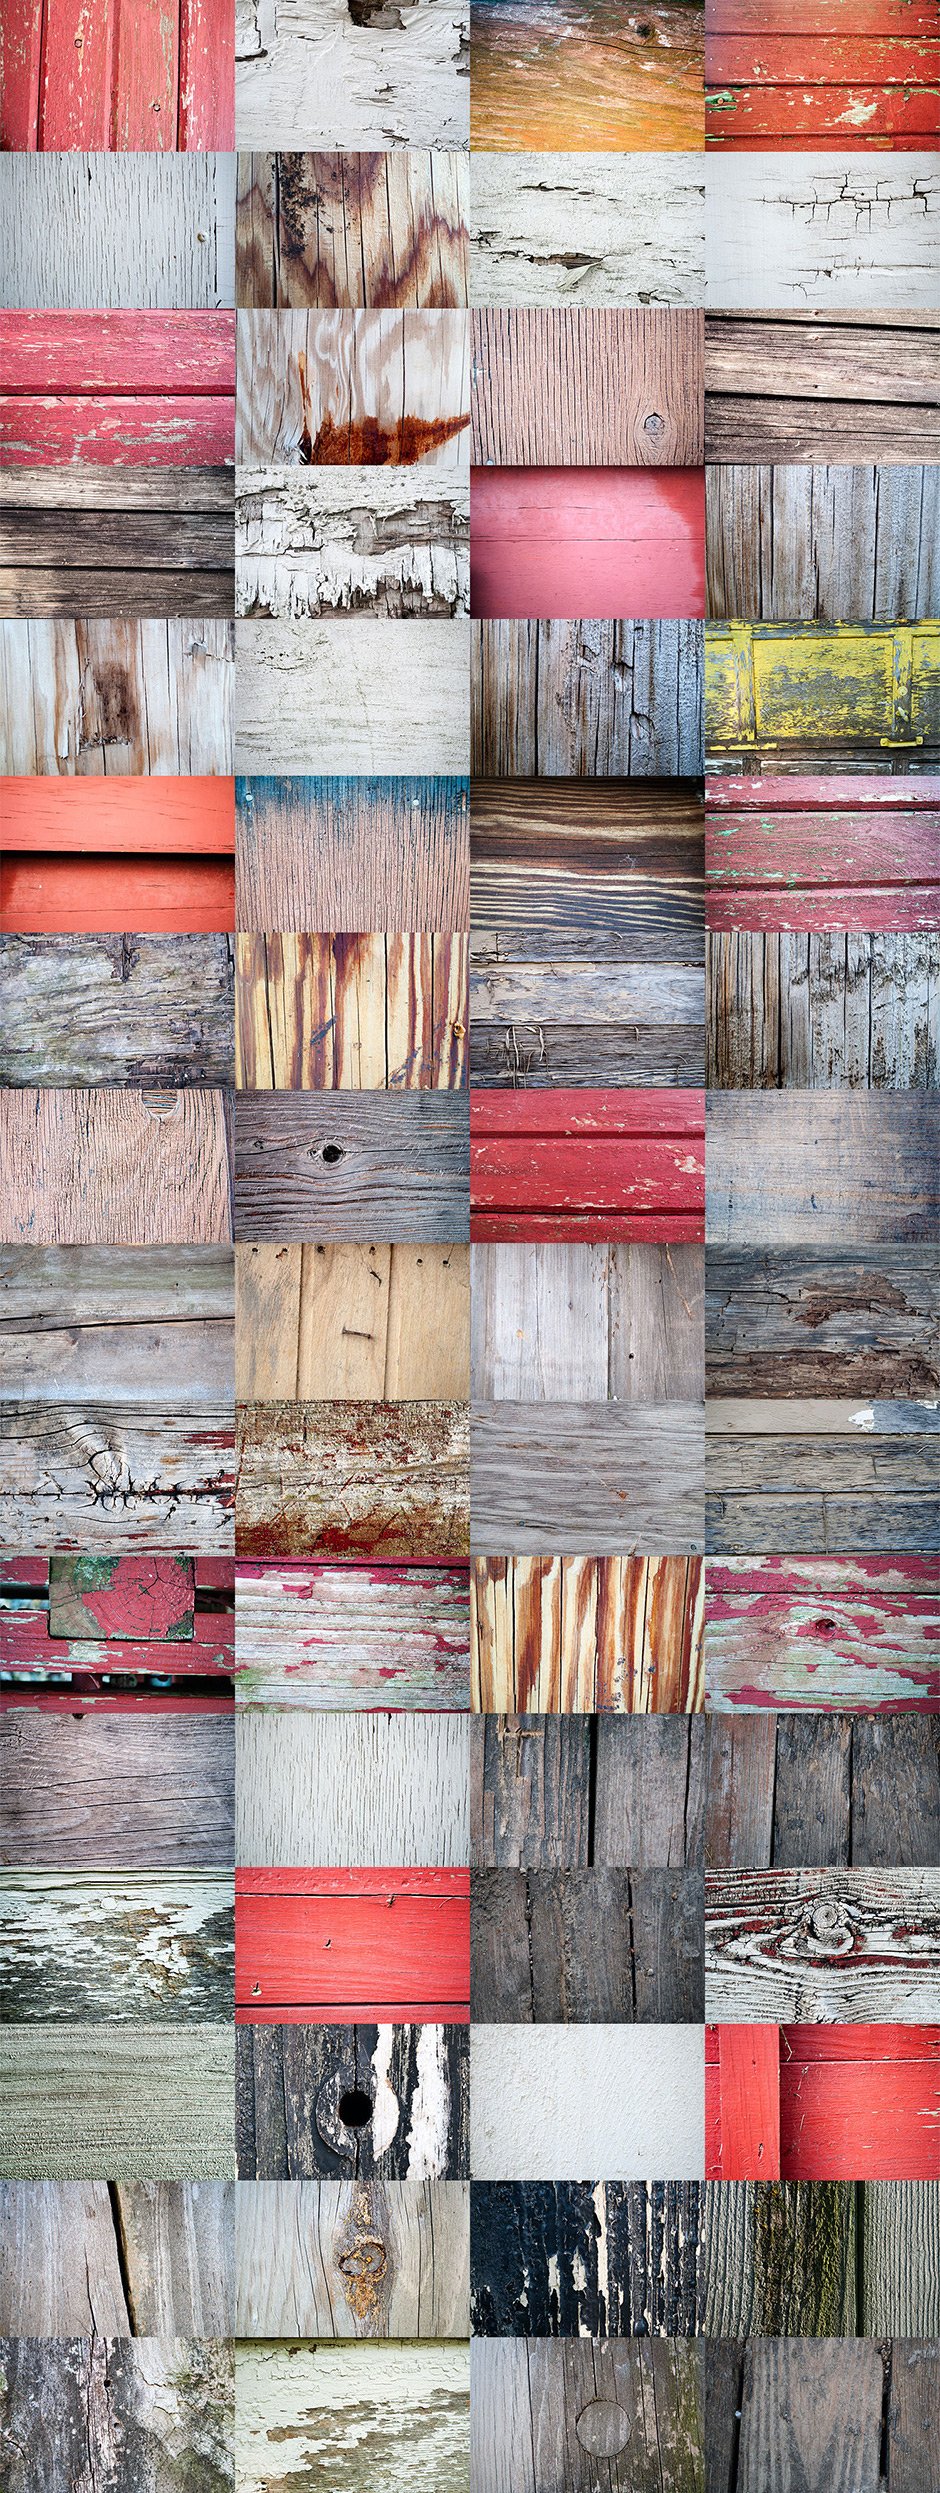 Barn & Farmhouse Wood Textures